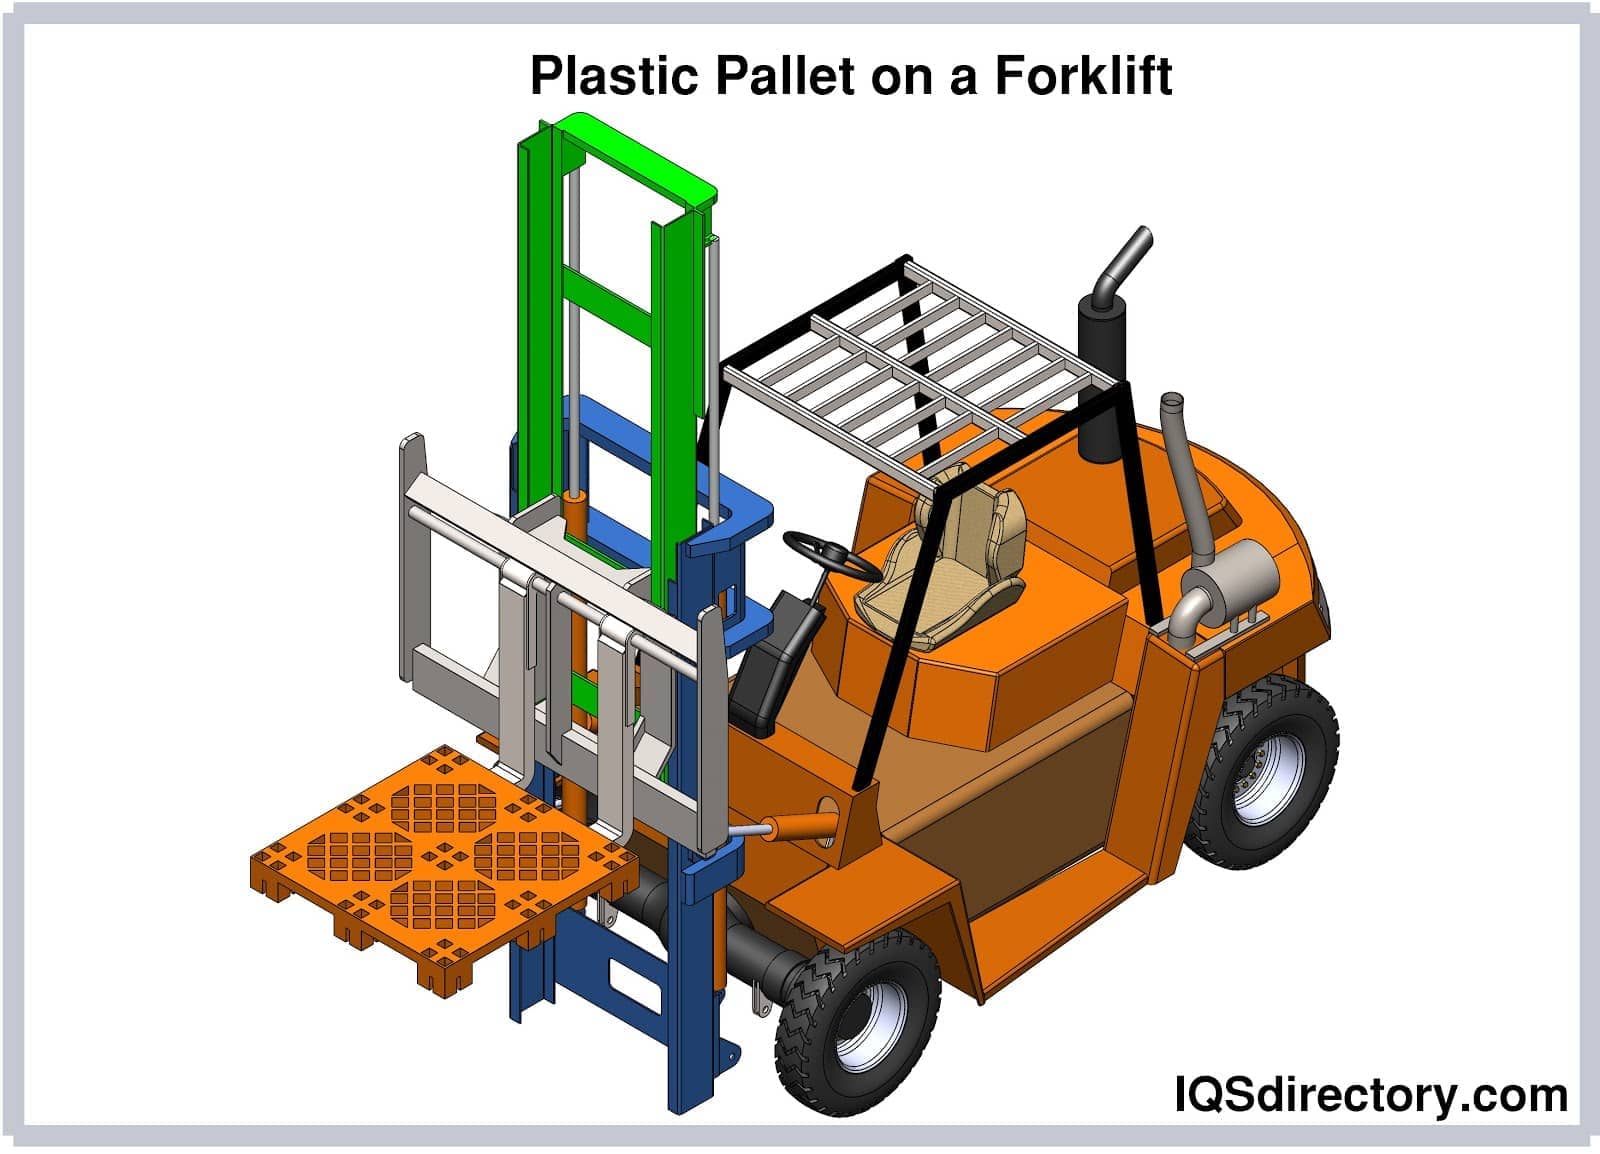 Plastic Pallet on a Forklift